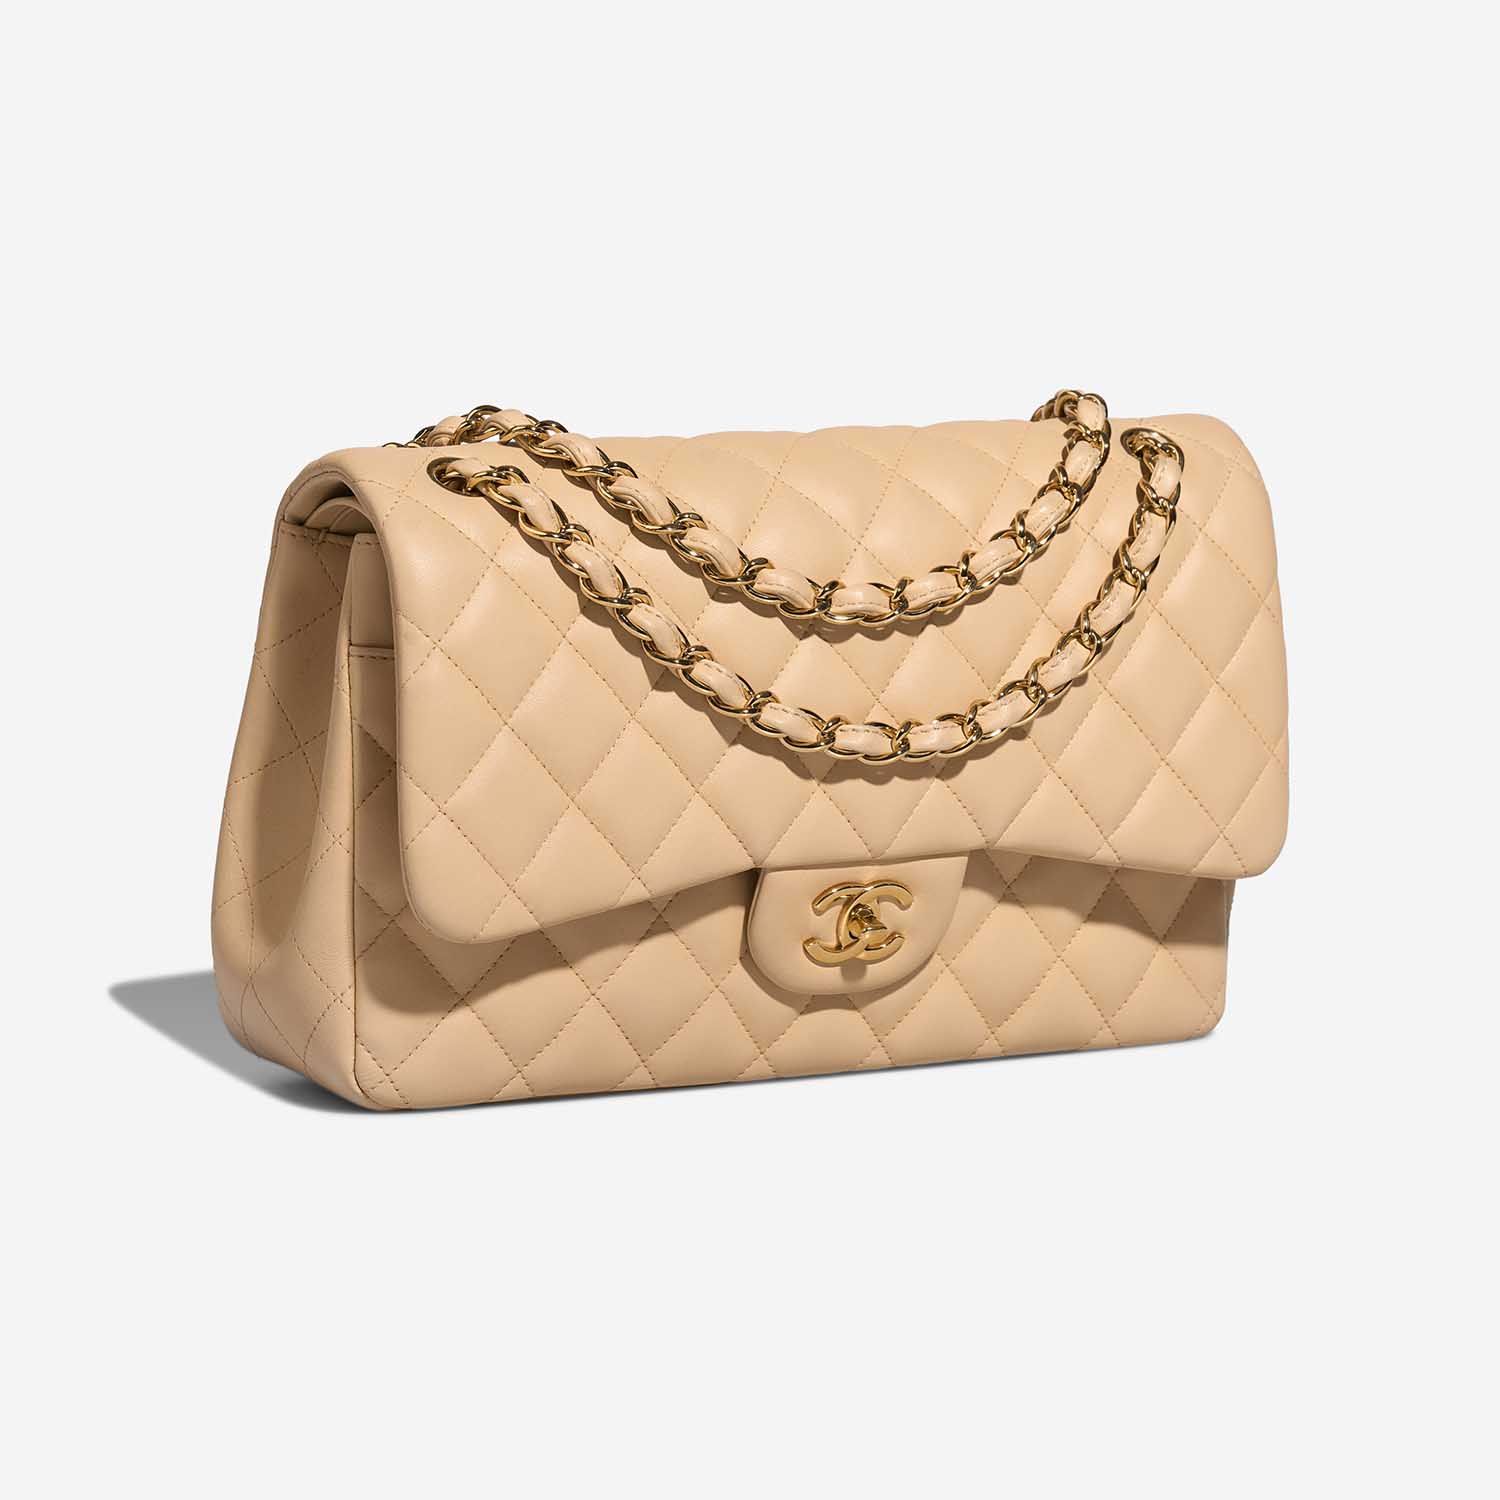 Chanel Timeless Jumbo Beige Side Front | Verkaufen Sie Ihre Designer-Tasche auf Saclab.com